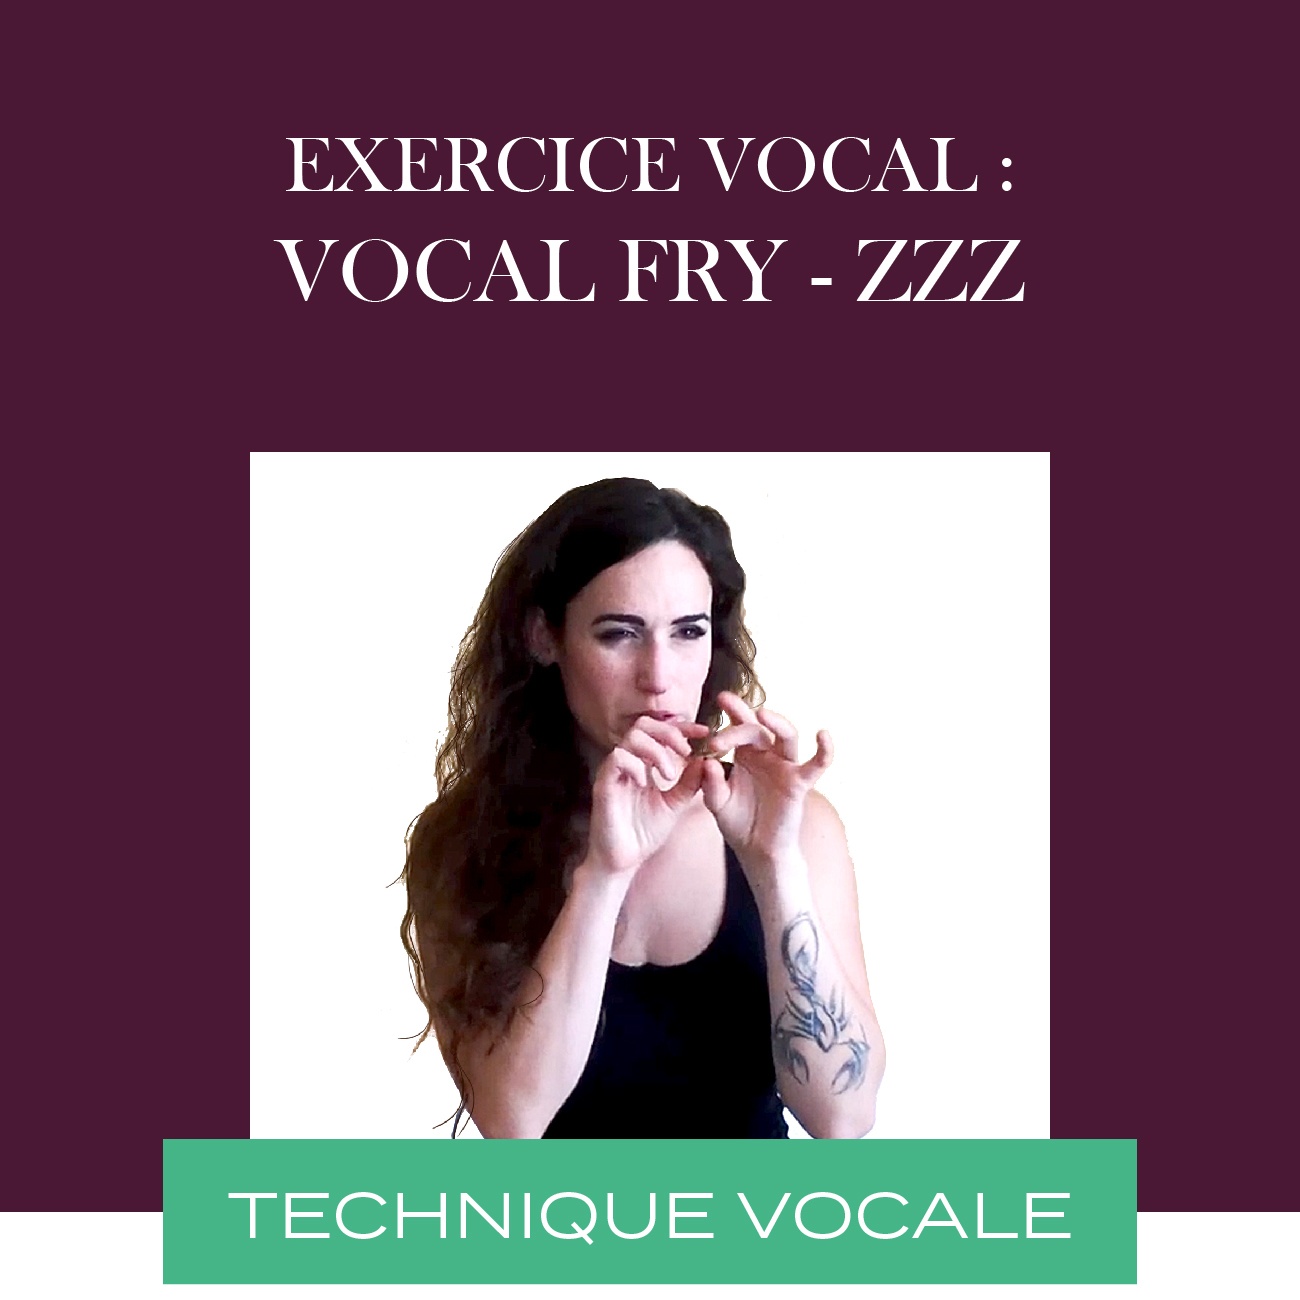 exercice vocal - vocal fry - hey et notes_Plan de travail 1 copie 8